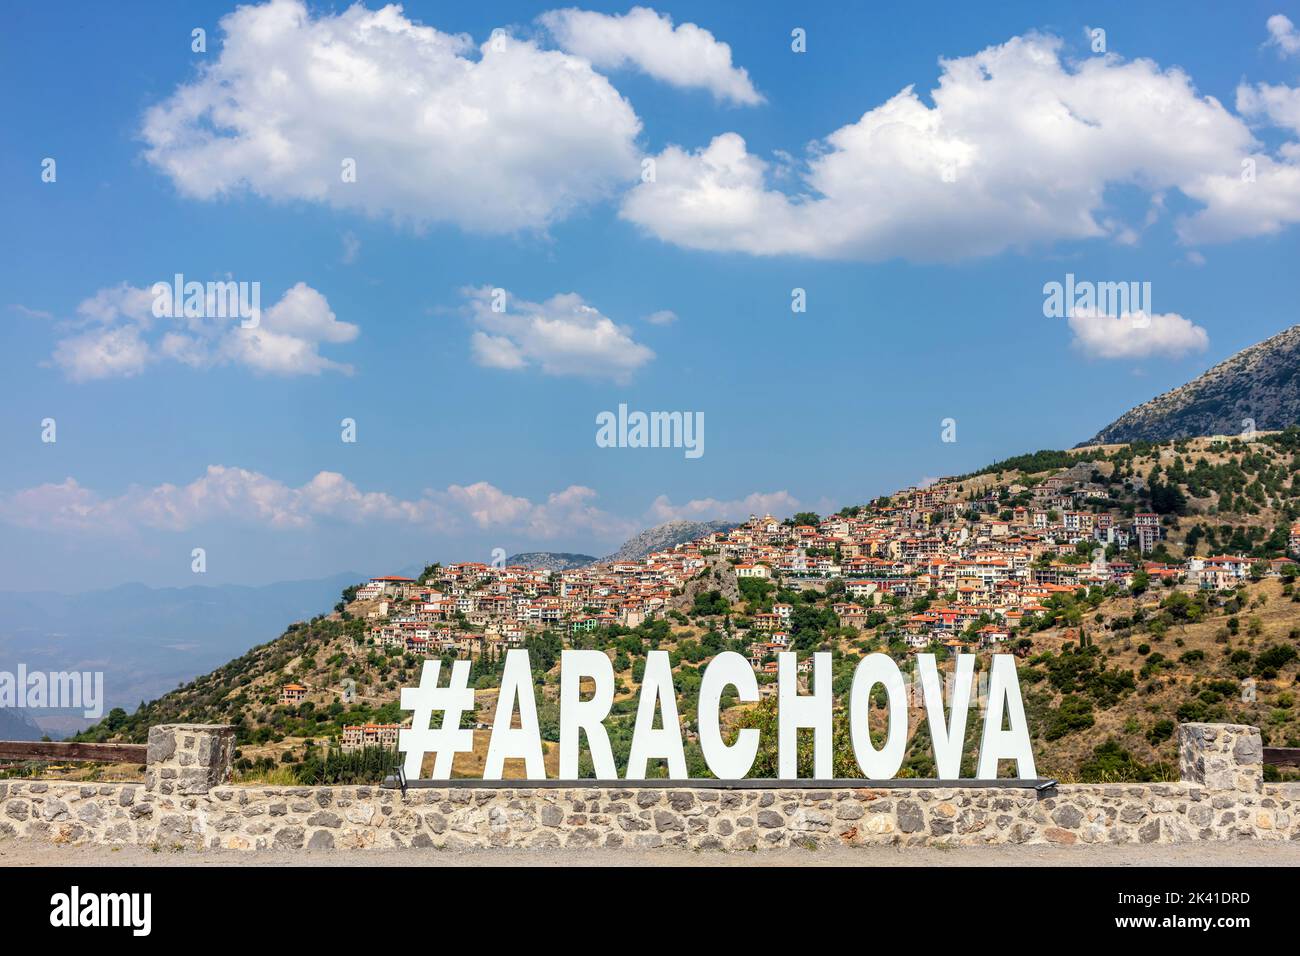 Arachova village at the Parnassos Mountain Greece. Name of the town, white text, travel destination Stock Photo